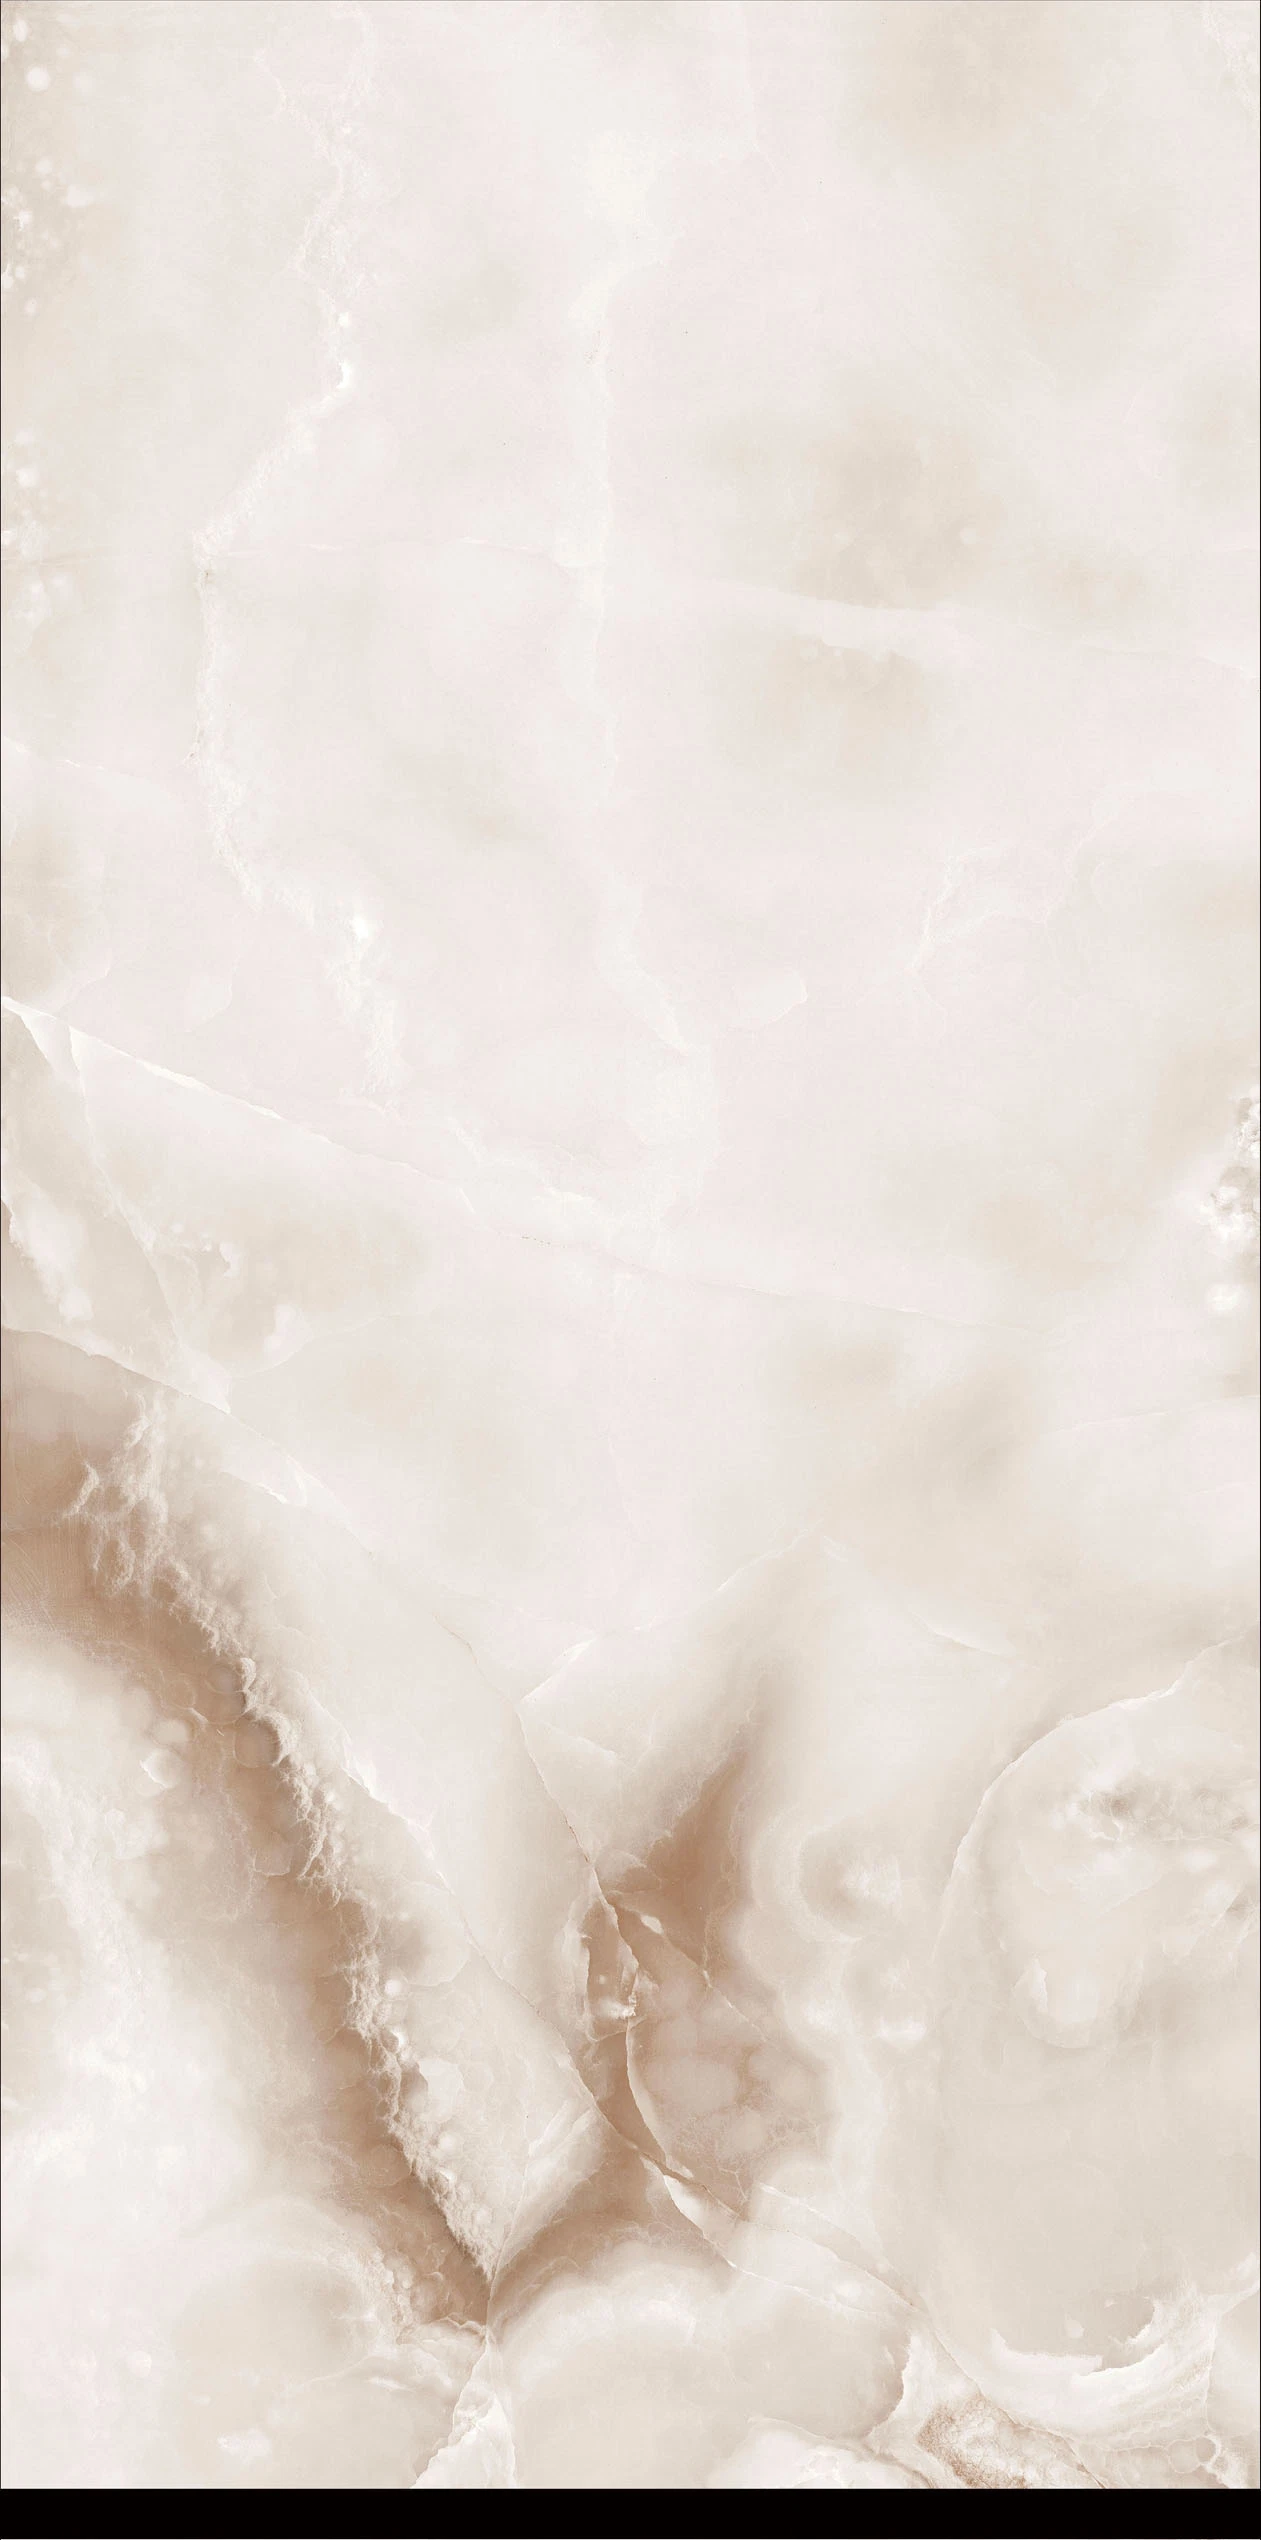 Строительные материалы Штеред Камень мрамор фарфор Slab Вода проницаемый кирпич Керамические плитки пола Глянцевое остекление Полли фарфоровый мрамор Слат